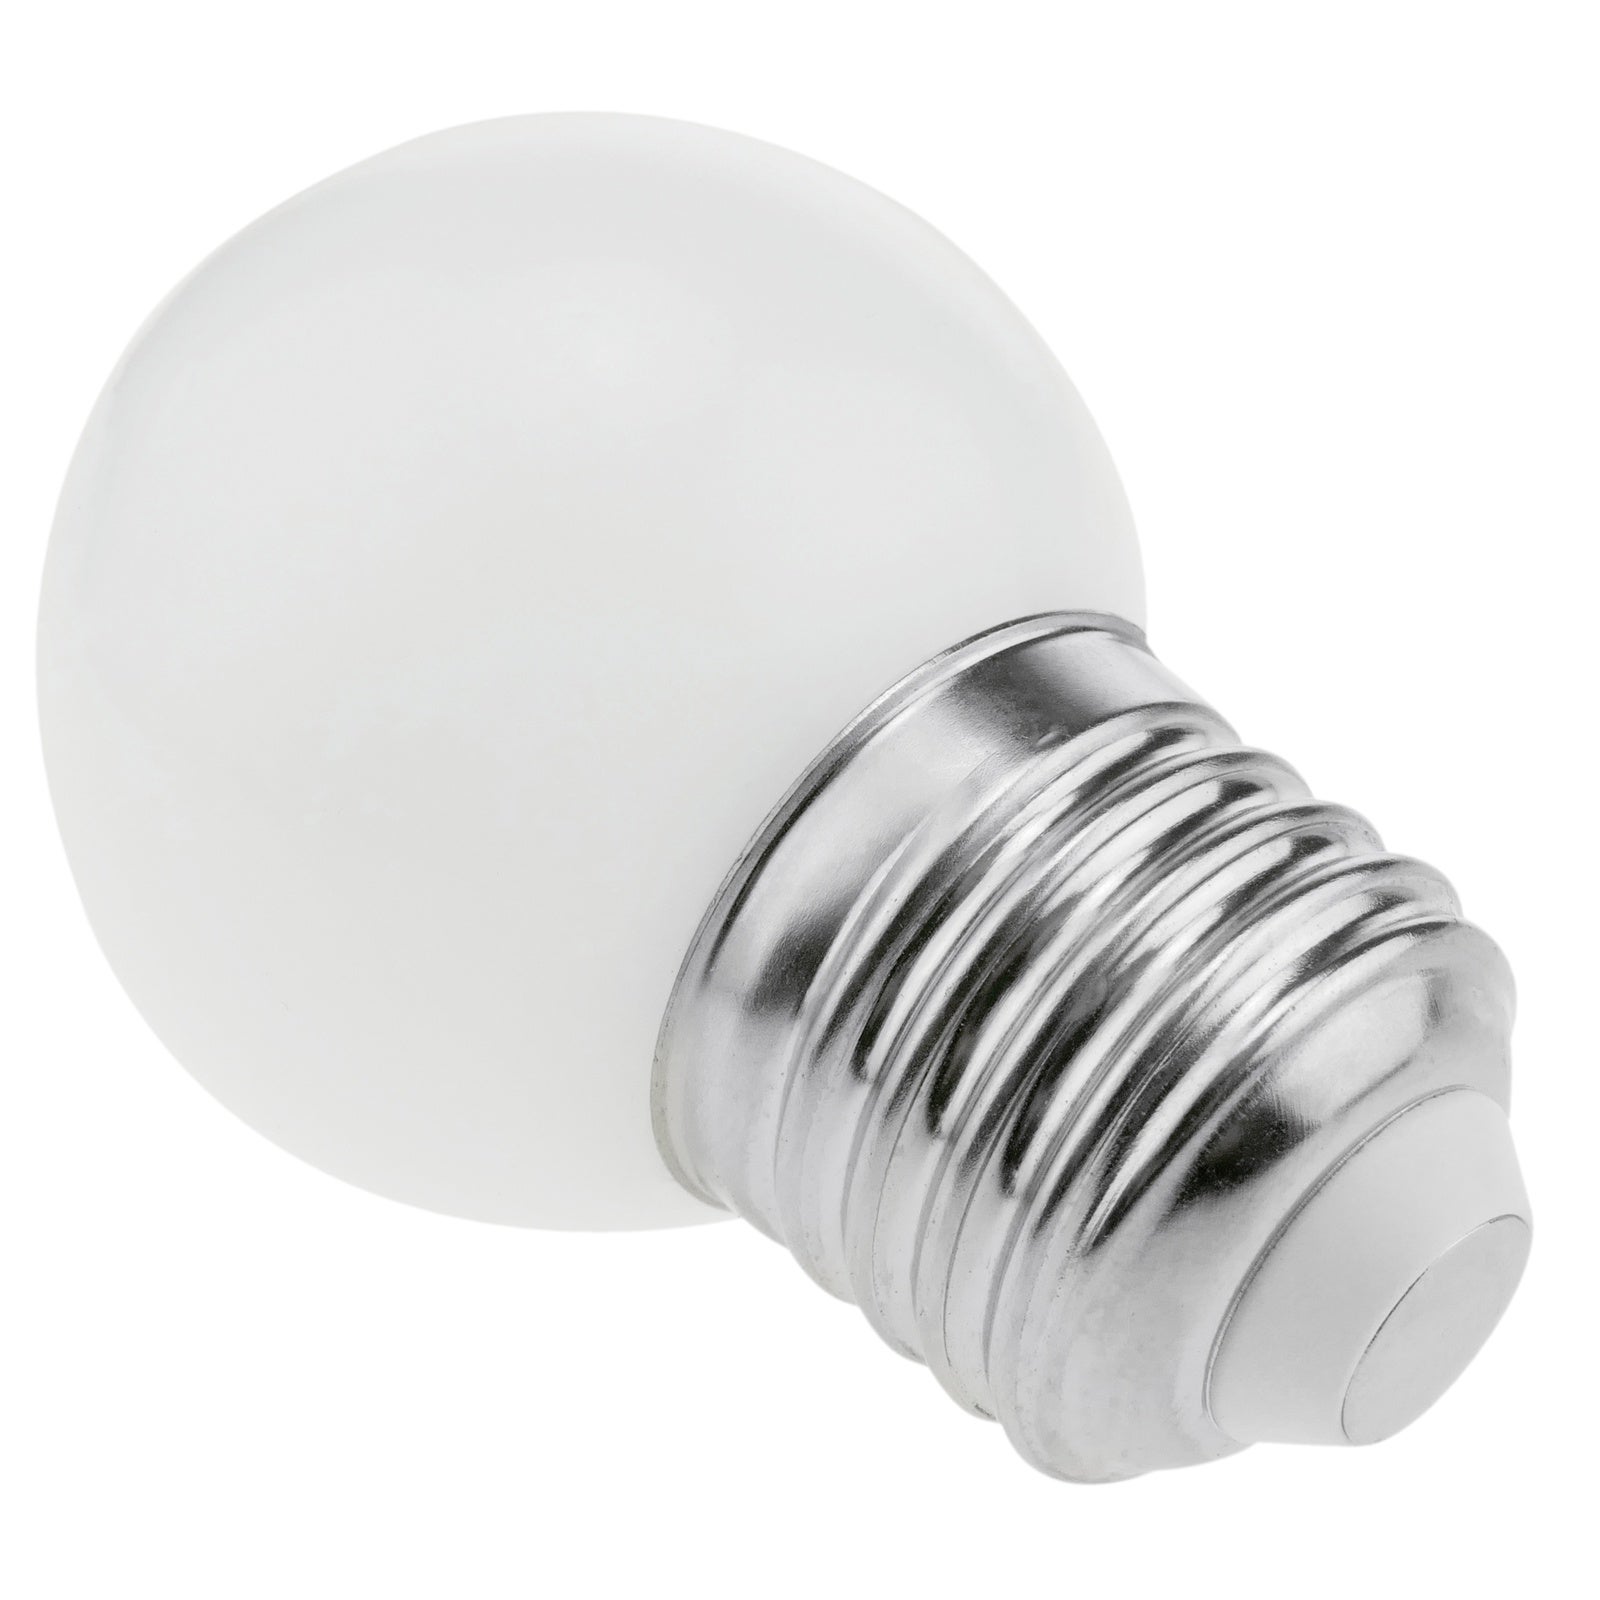 Ampoule LED basse consommation de lumière du jour avec 230VAC 5 W E27 G45